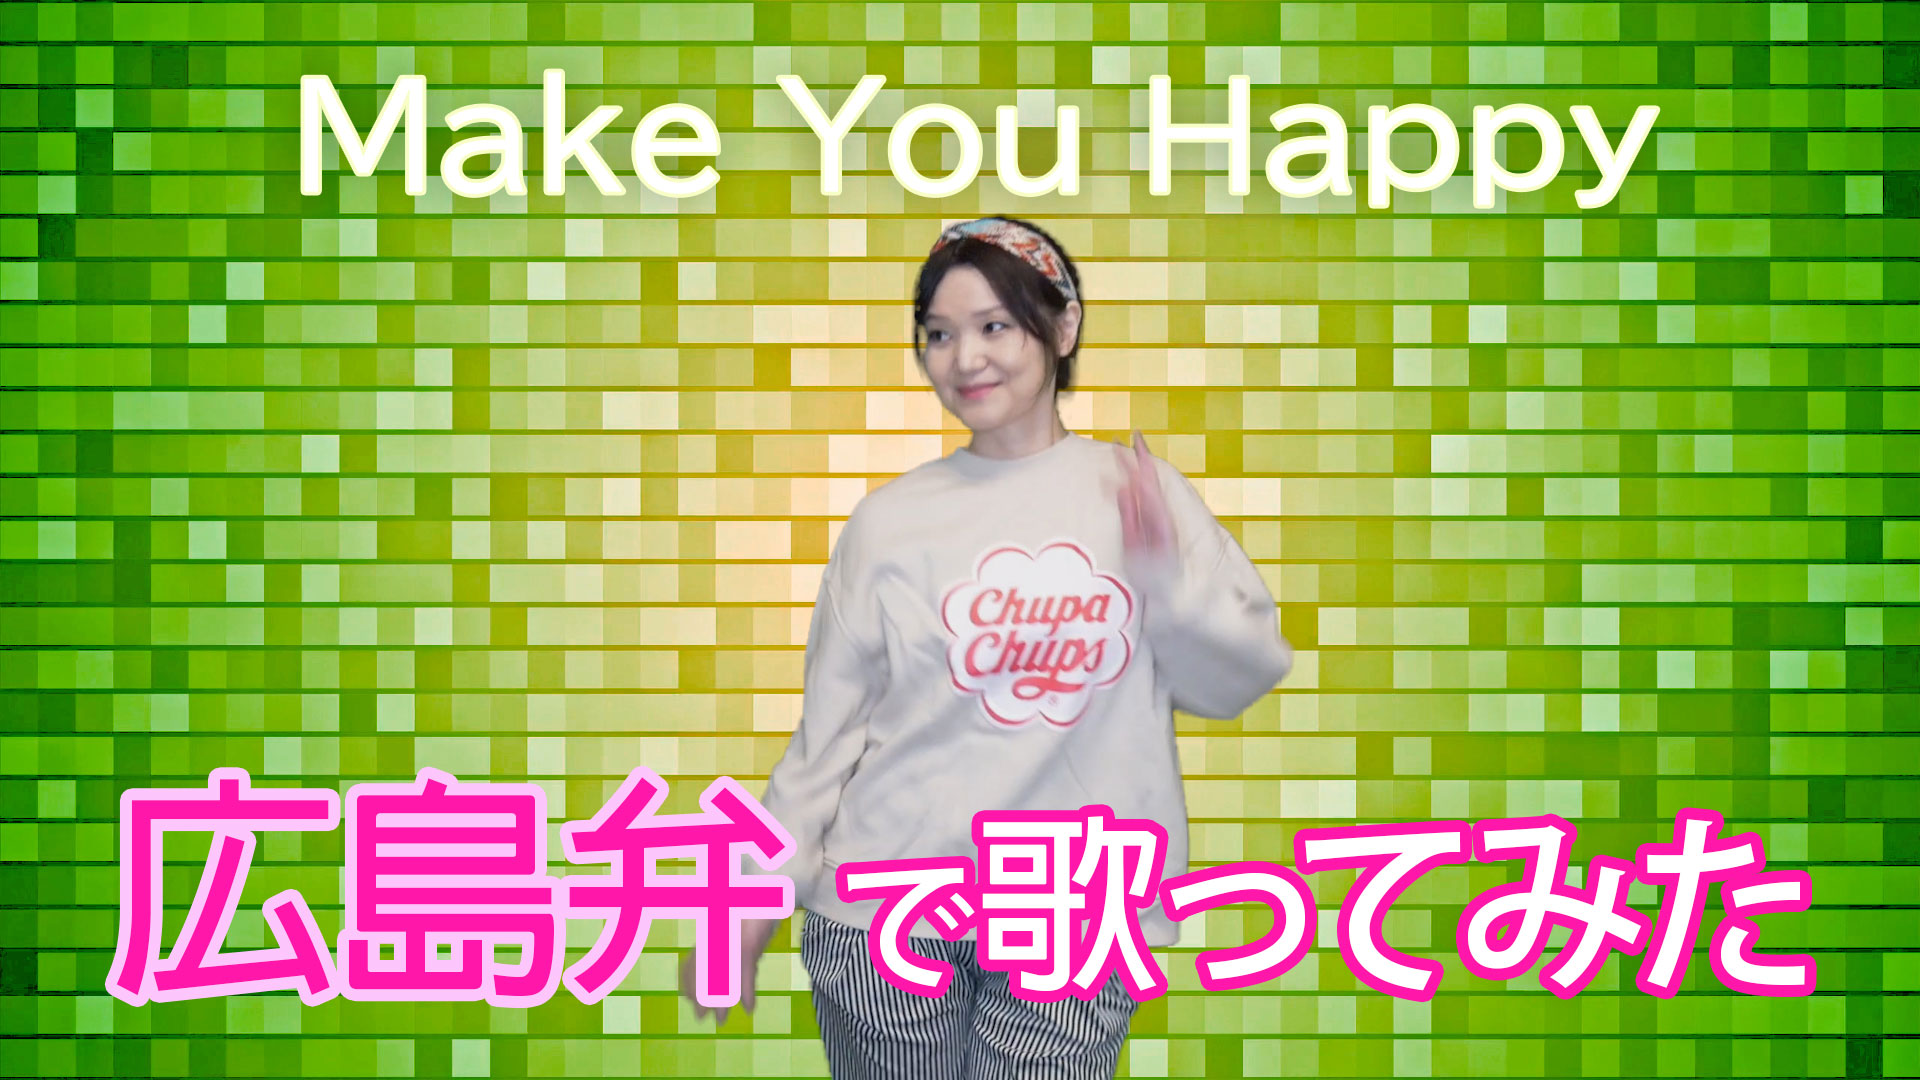 【Youtube】「Make You Happy」カヴァー/広島弁で歌ってみたシリーズ